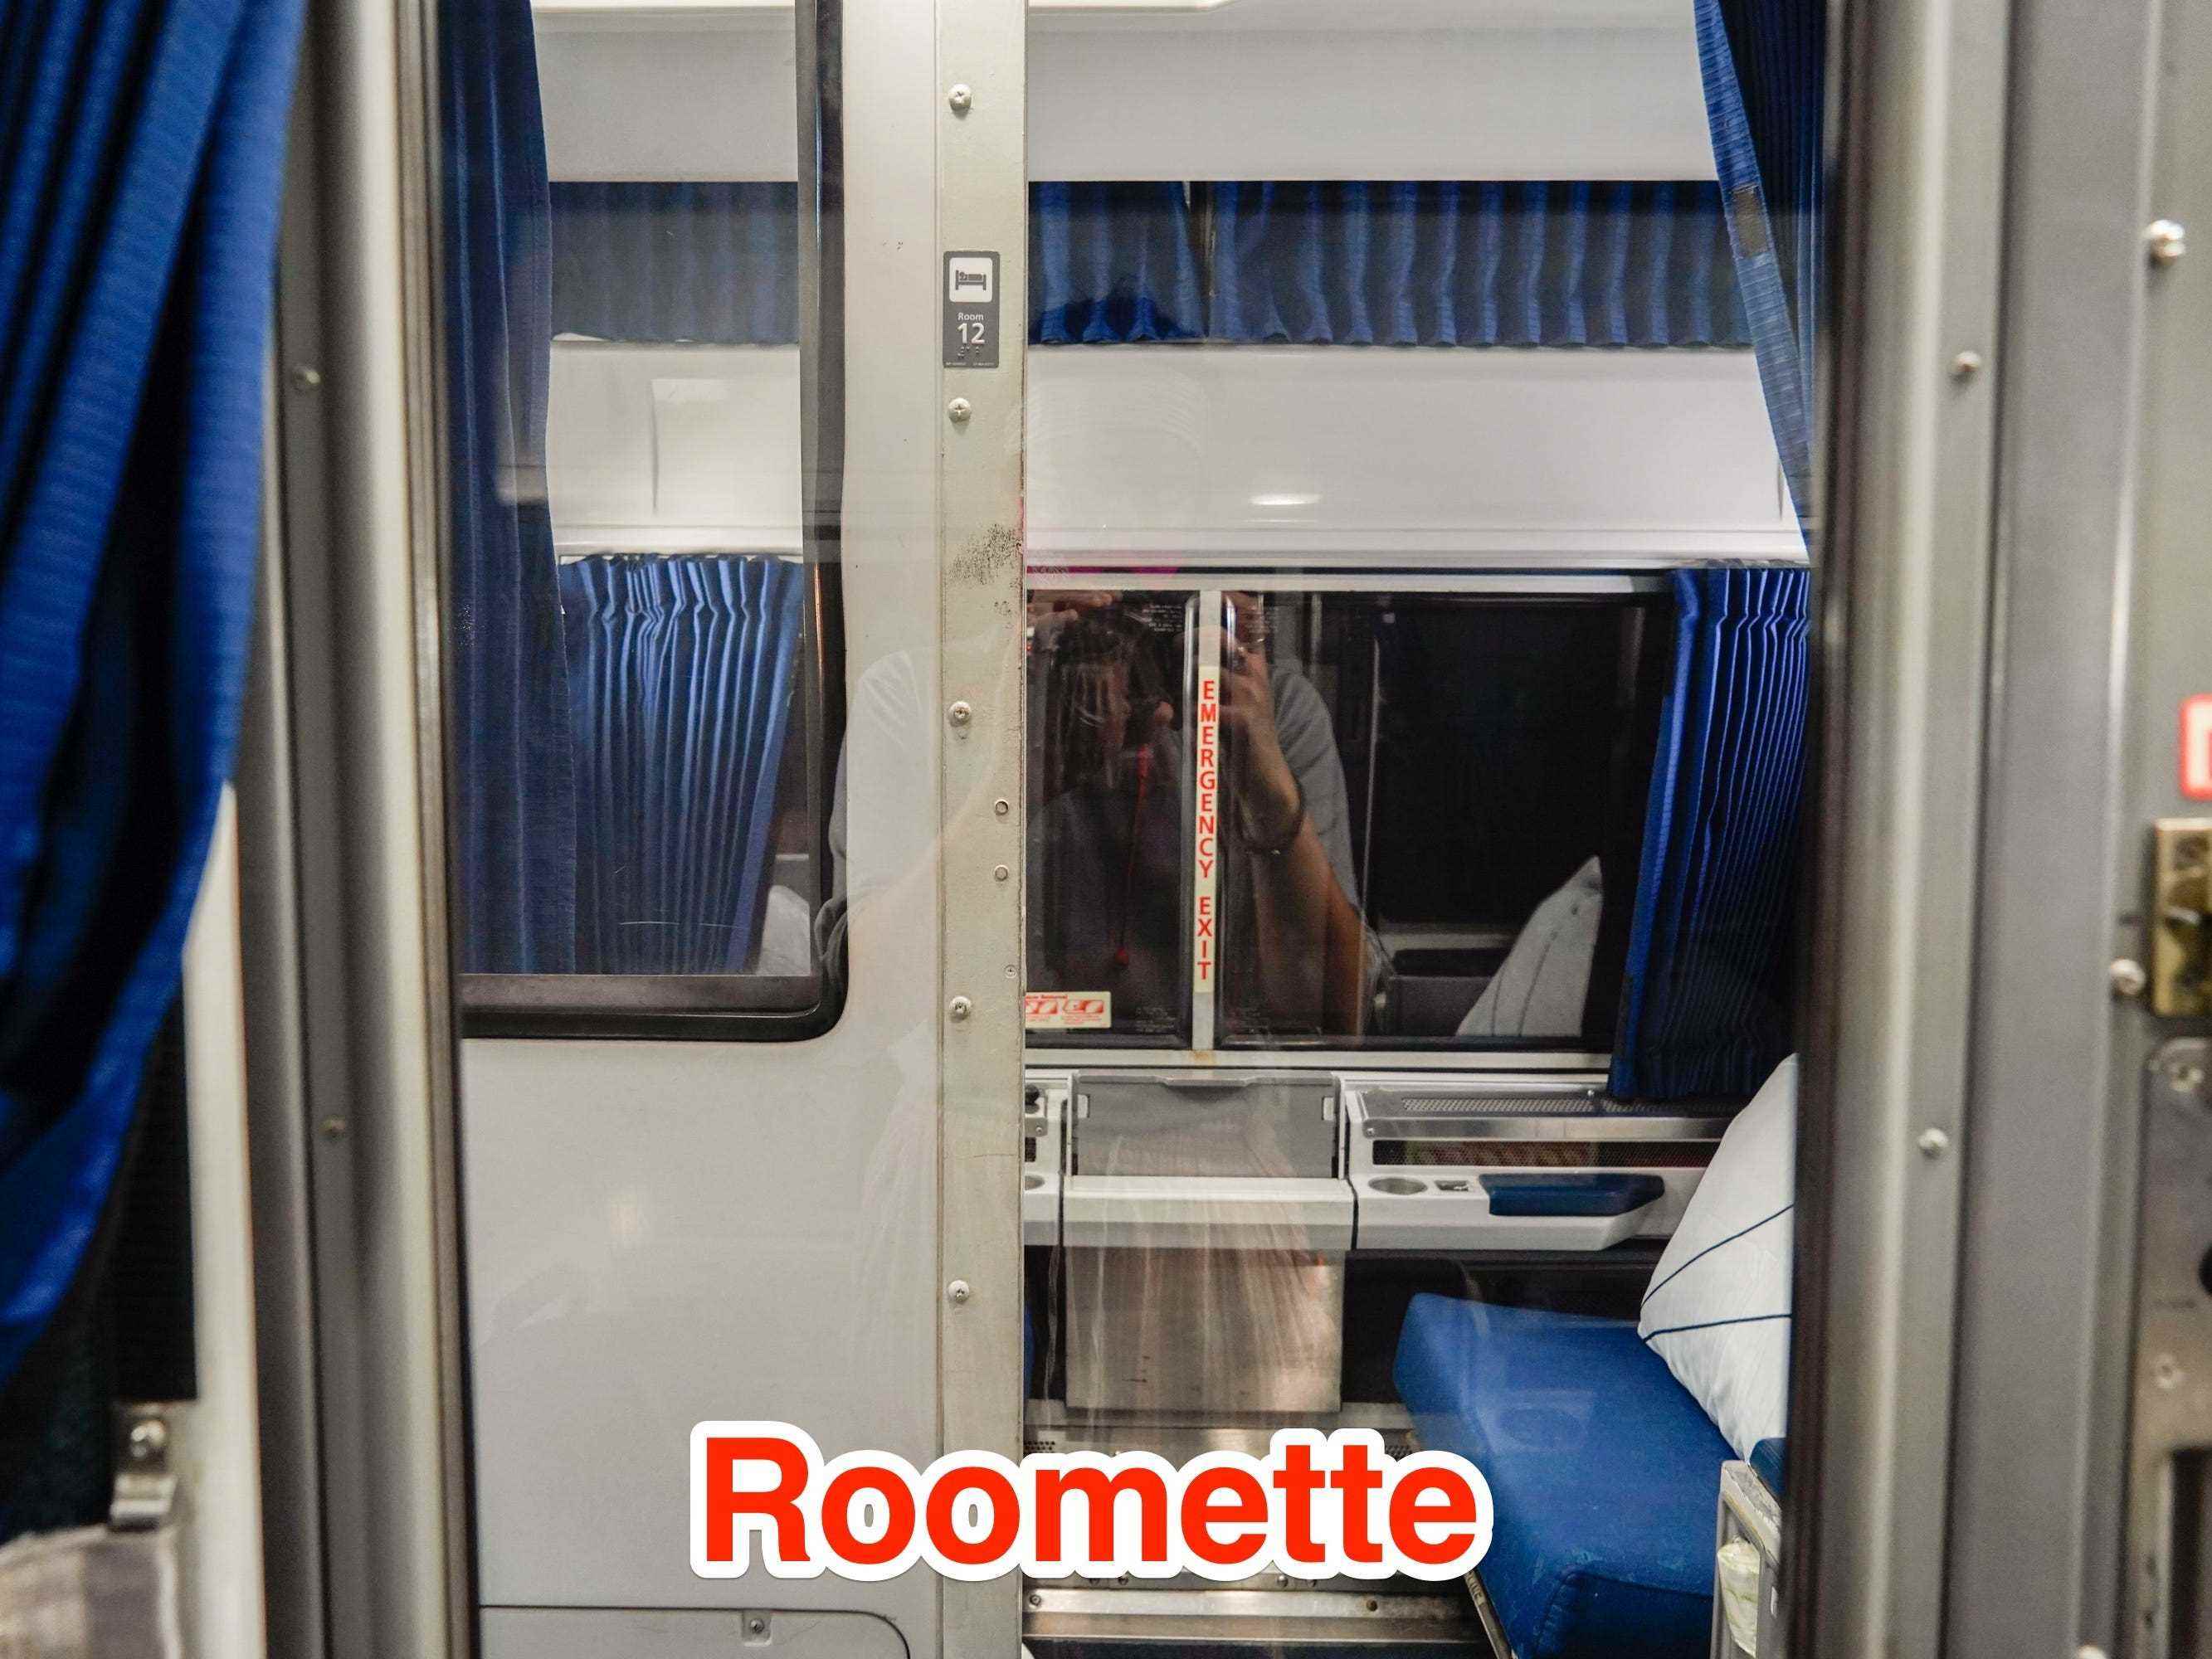 Eine Roomette ist gegenüber einer anderen Roomette mit halb offener Tür zu sehen